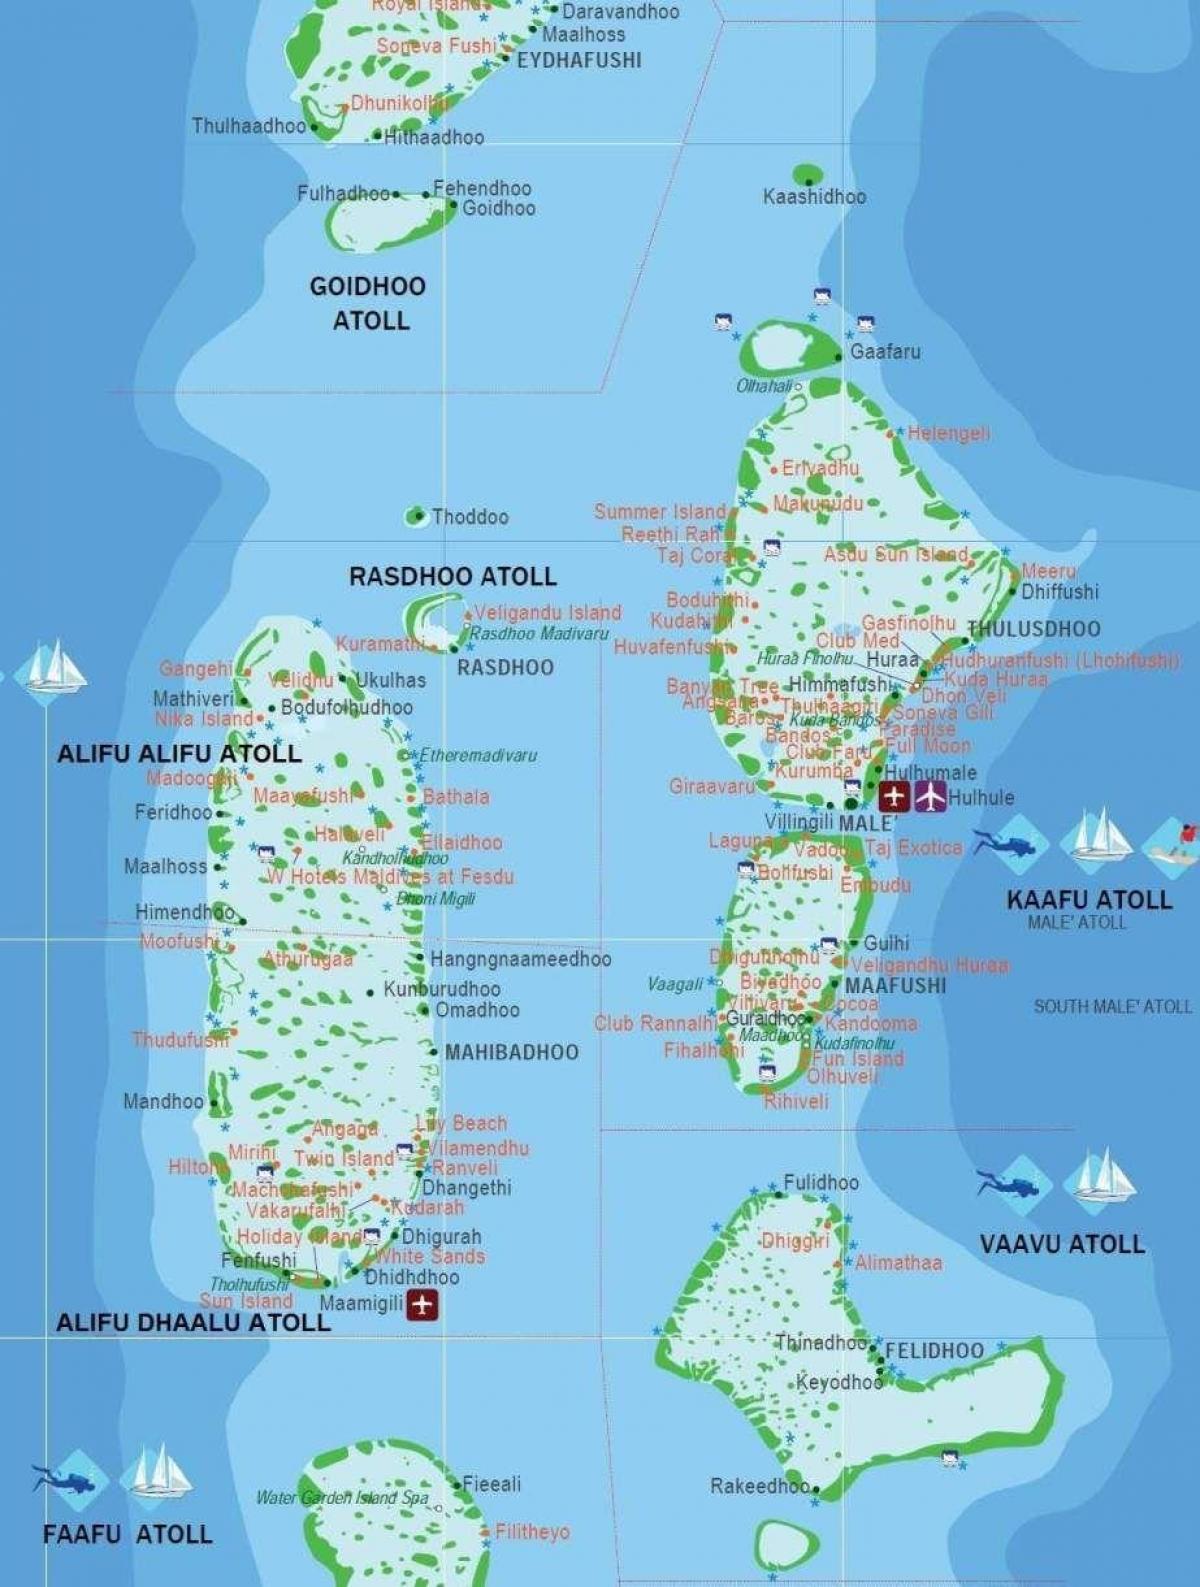 zemljevid turističnih maldivi